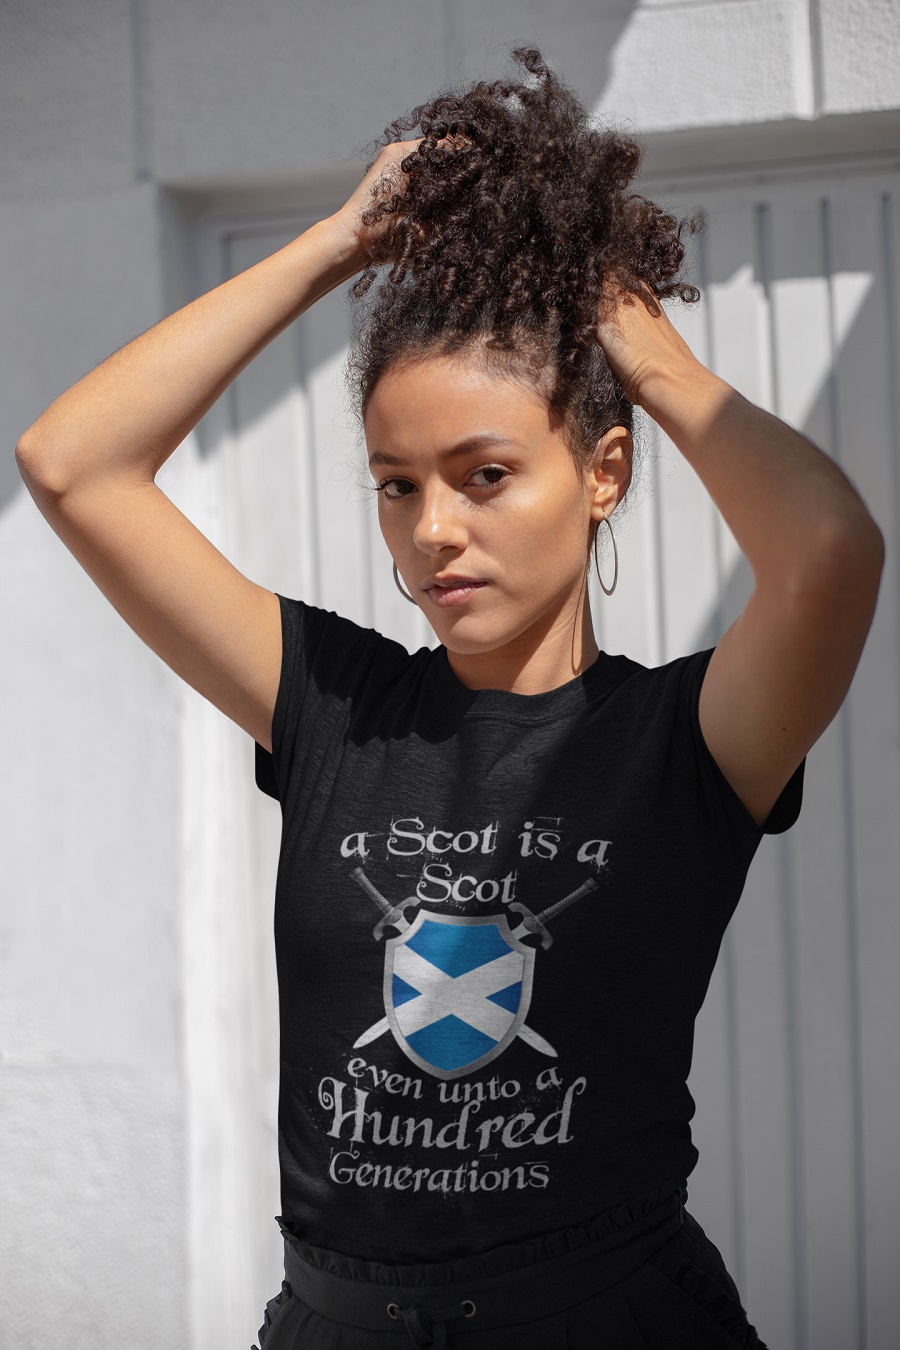 A scot is a scot even unto a hundred generations shirt